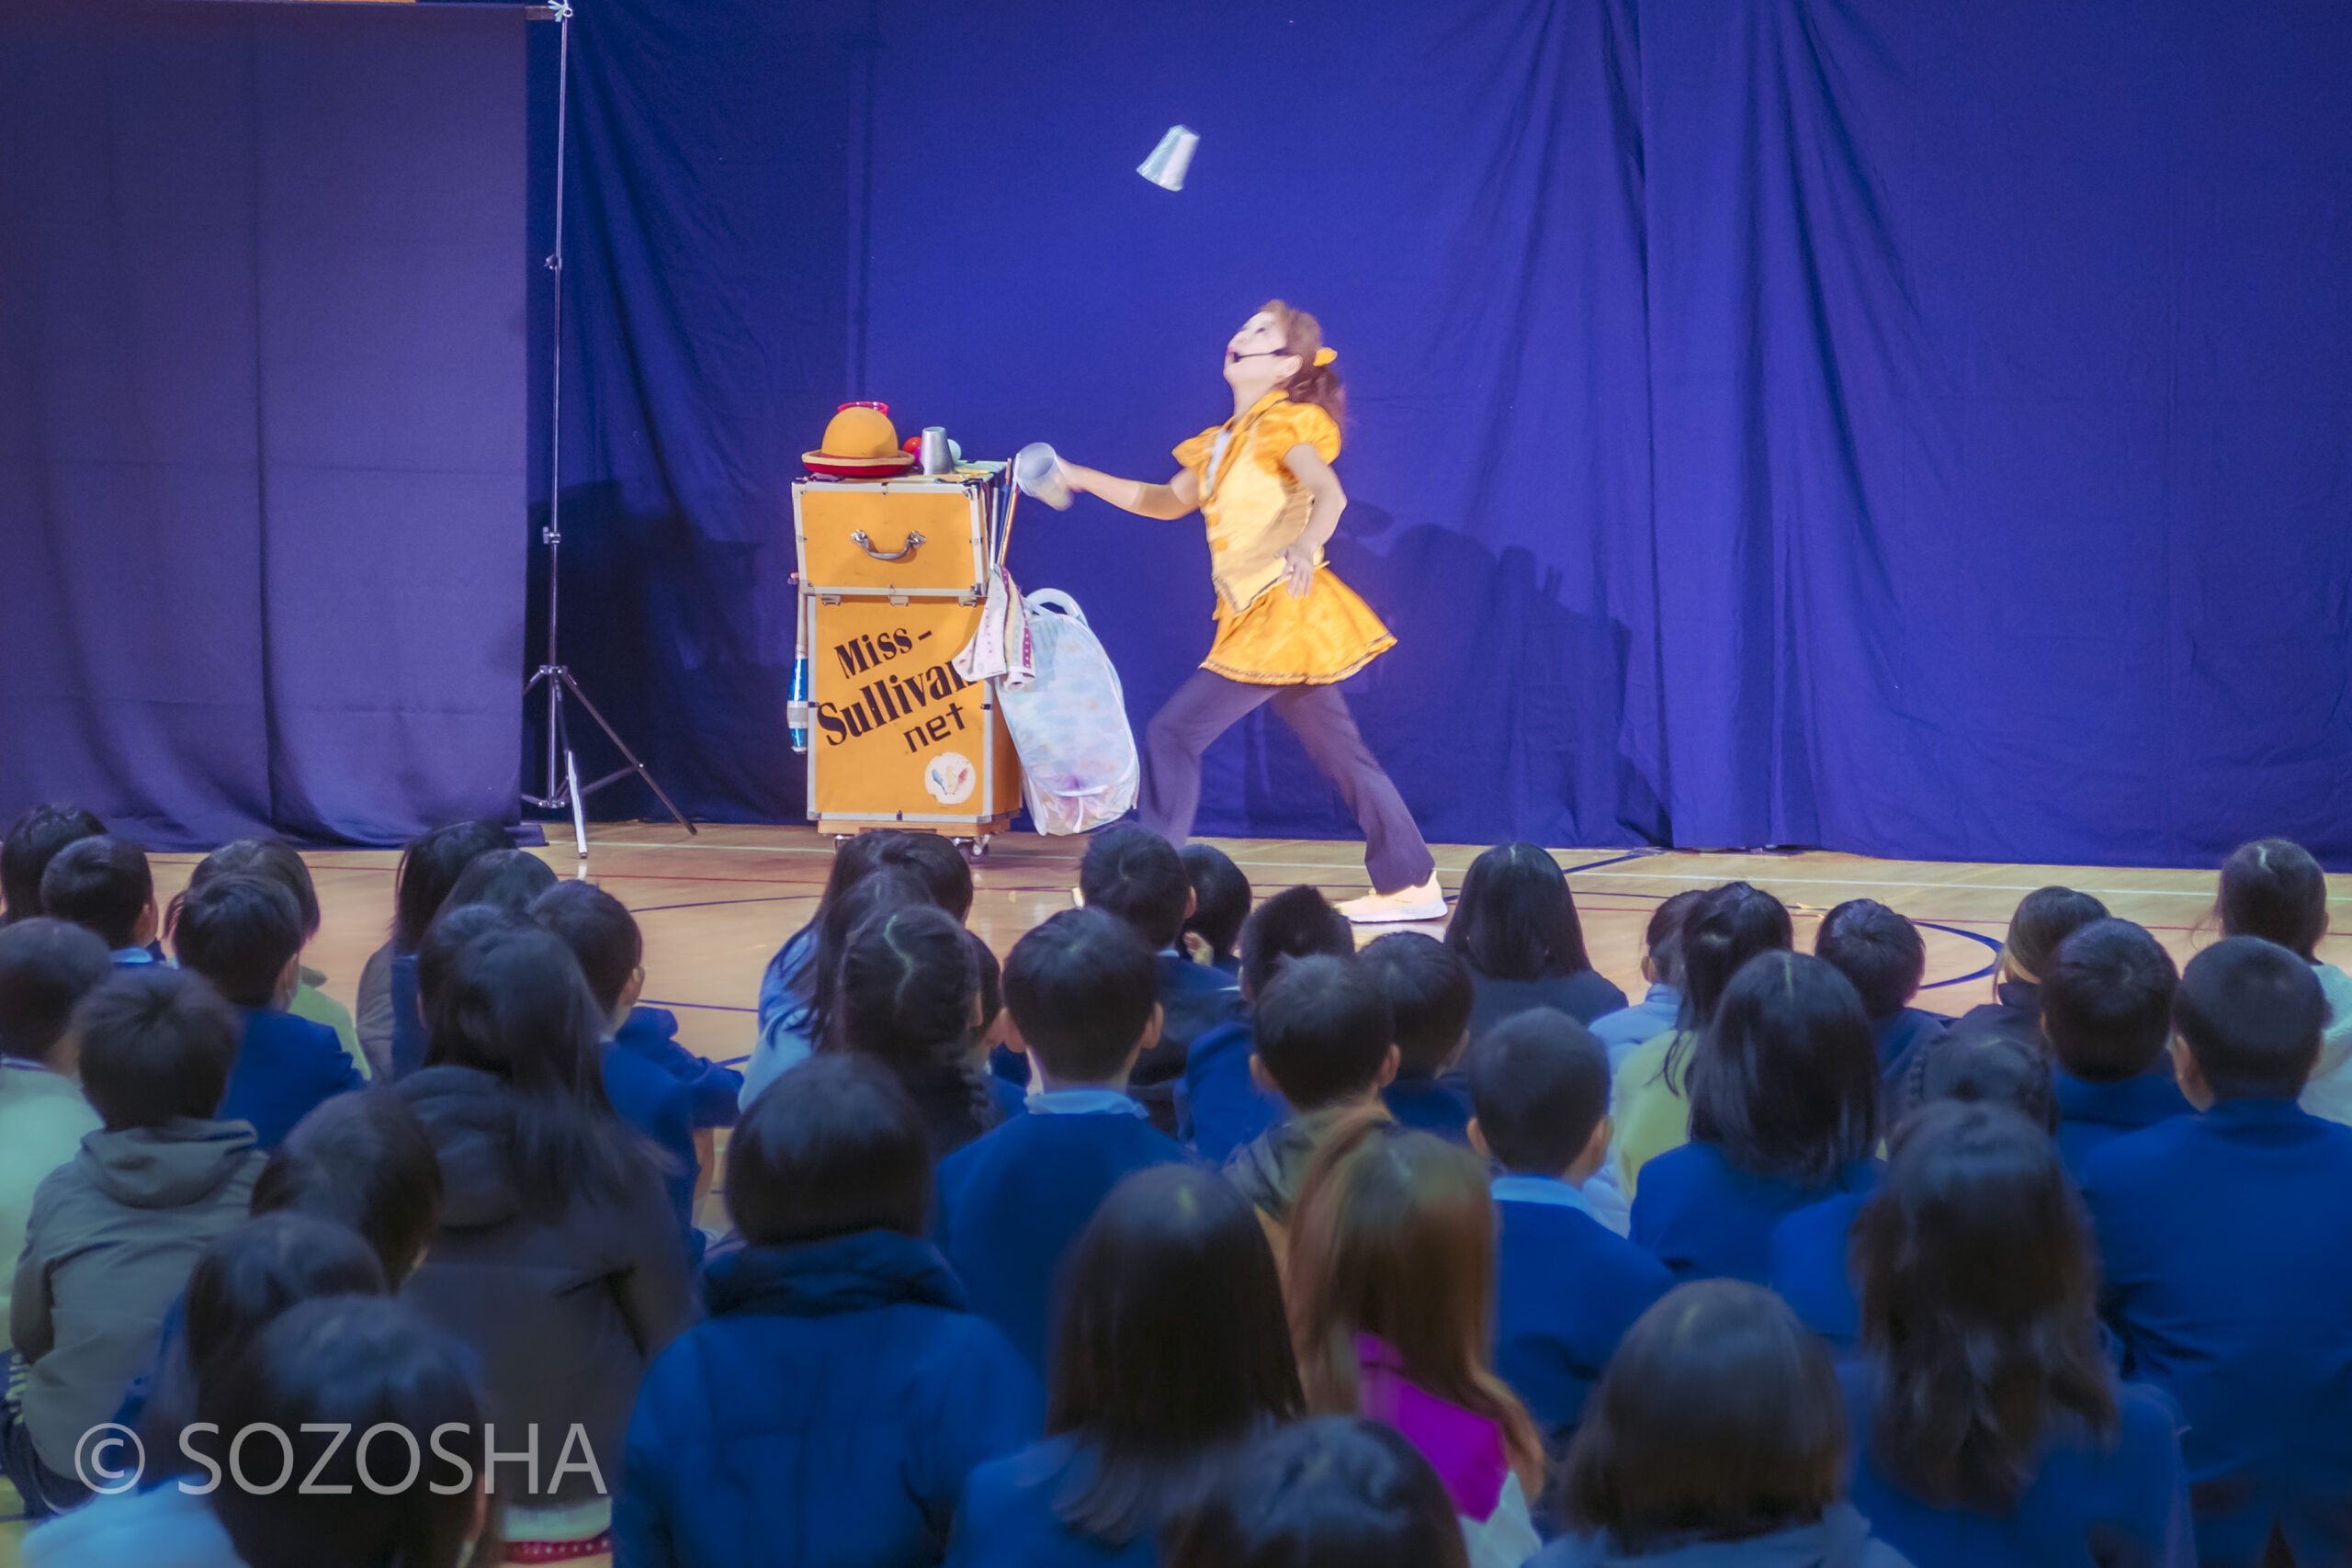 カップのジャグリング | 小学校の芸術鑑賞会 | ジャグリング・ショー | ミス・サリバン